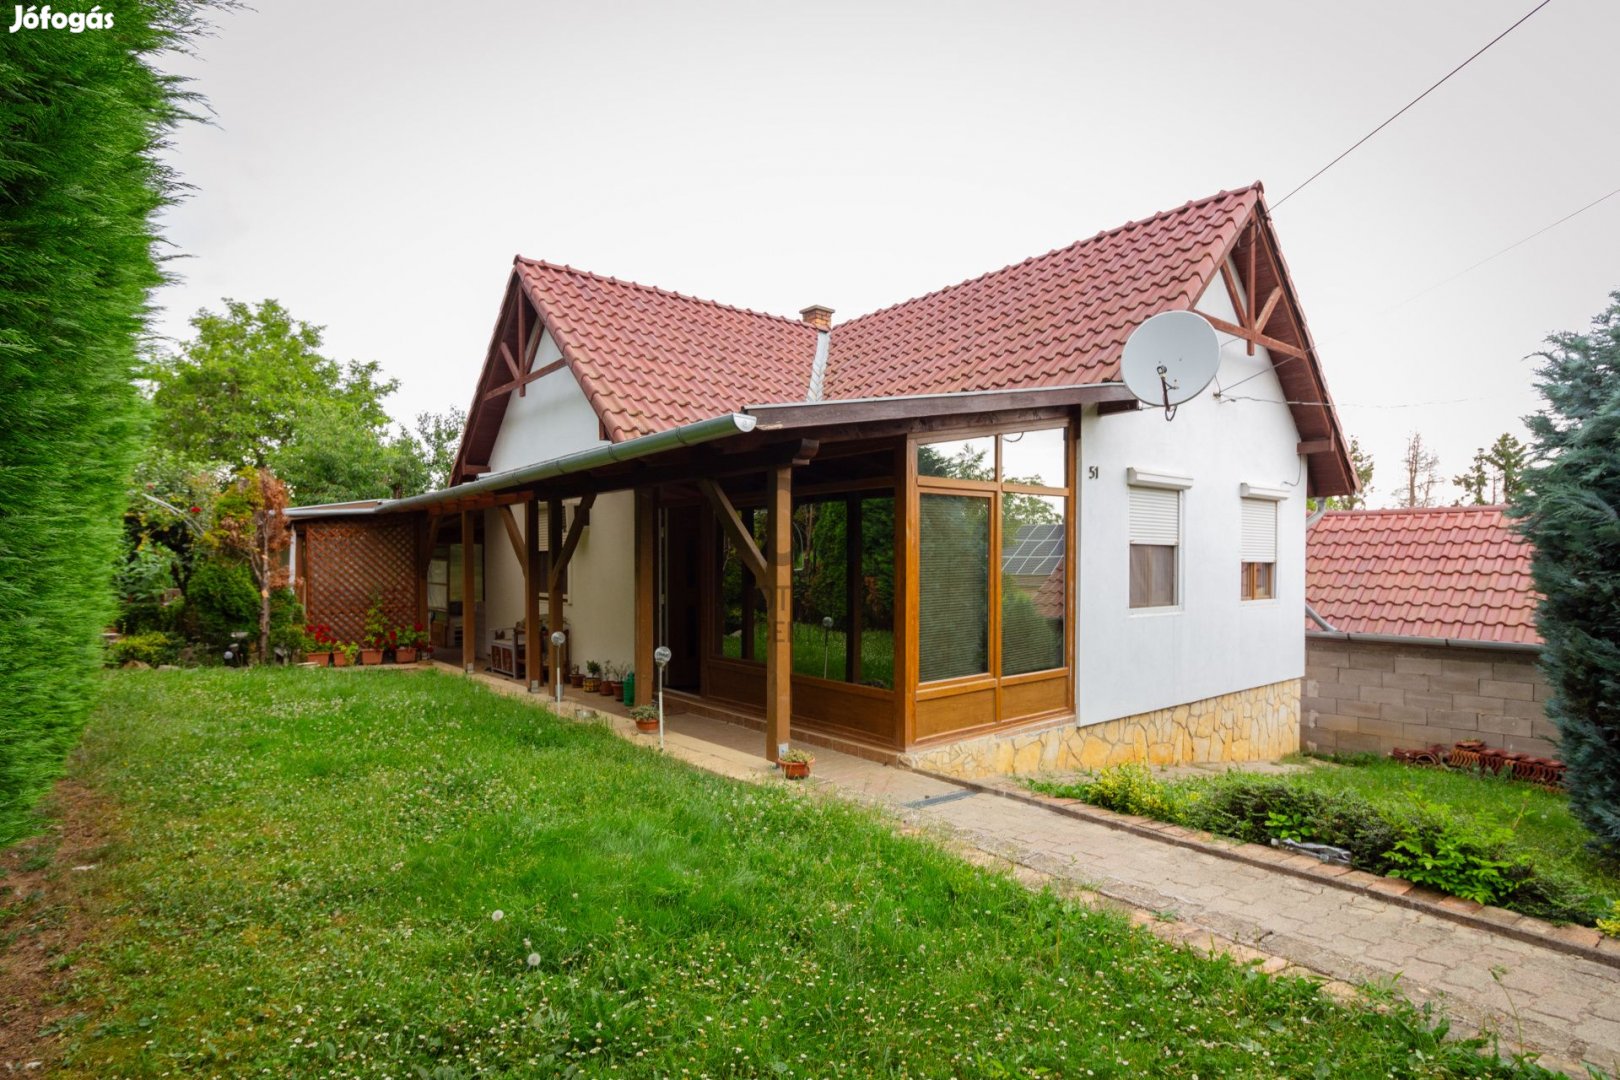 Kényelmes otthon Újhegyen - 2 szobás ház Pécsen, Baranya vármegyében.